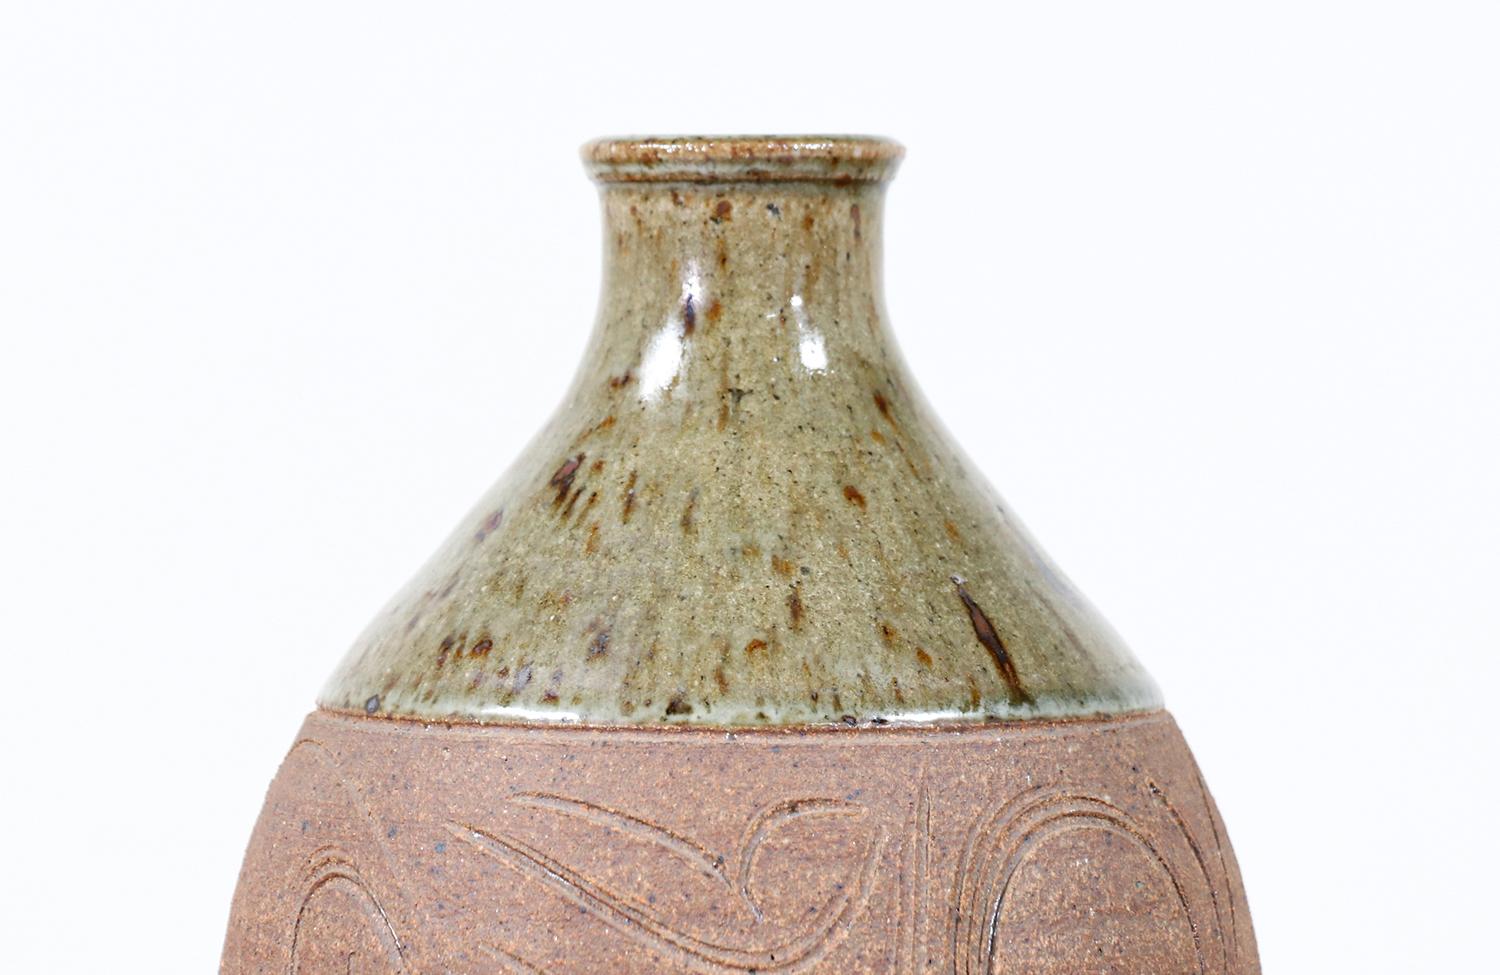 Américain Vase en céramique Studio Pottery de Californie moderne de Mark Blumenfeld